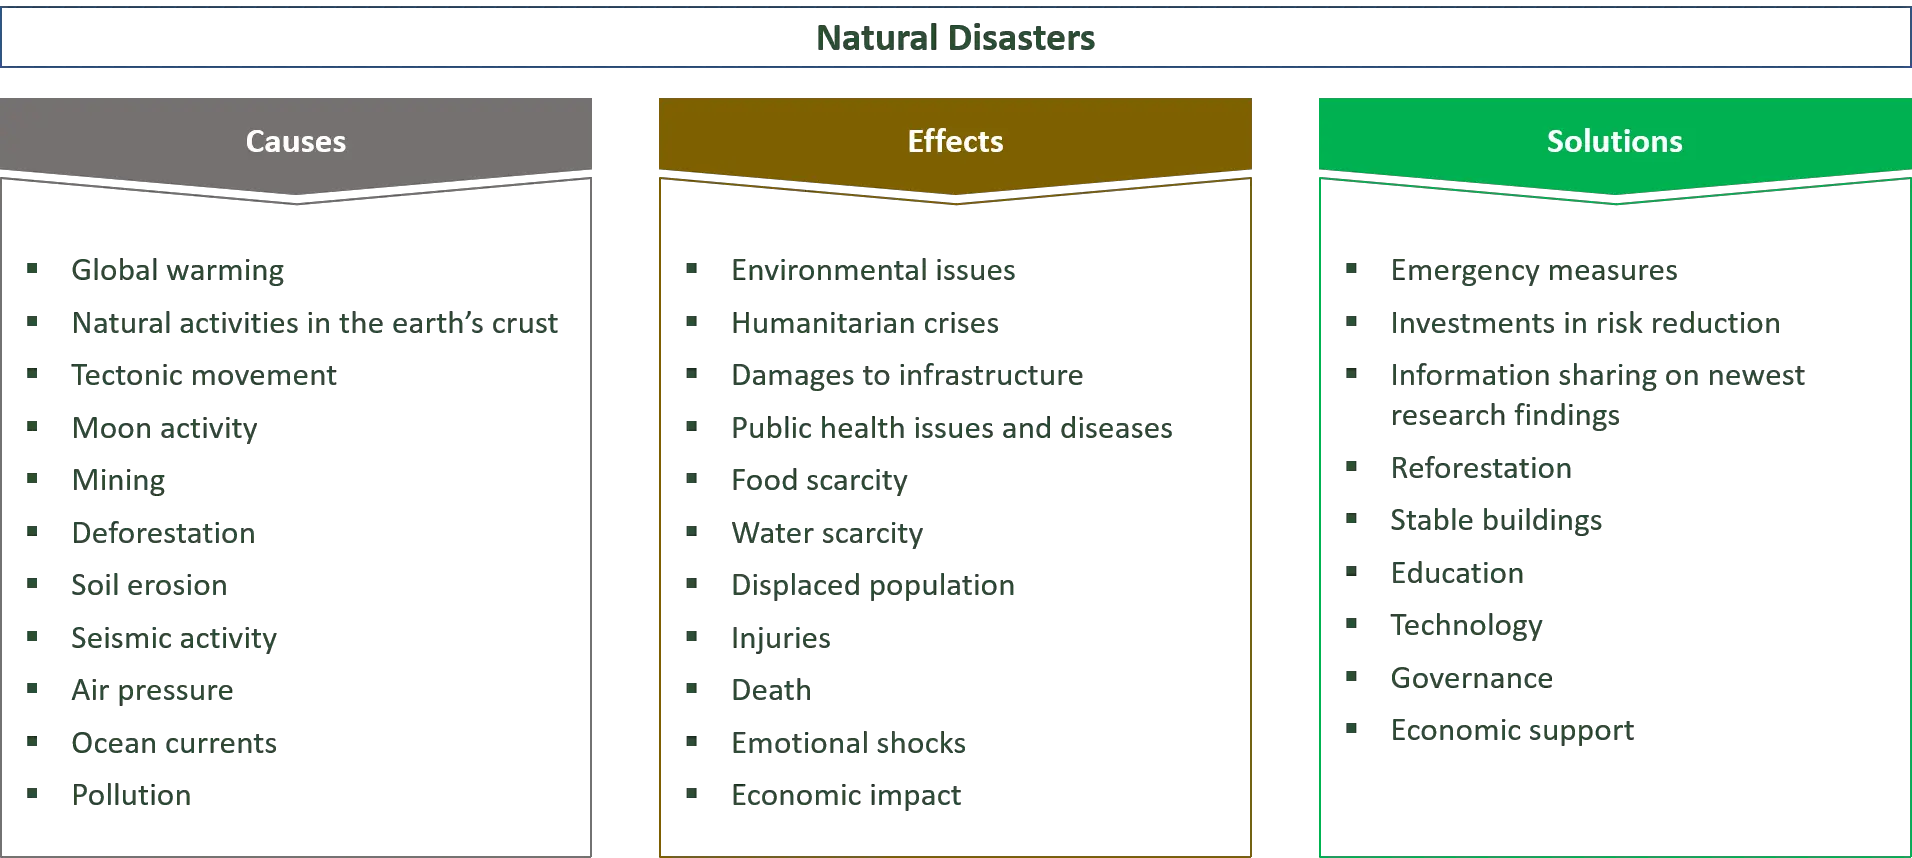  causes, effets et solutions des catastrophes naturelles